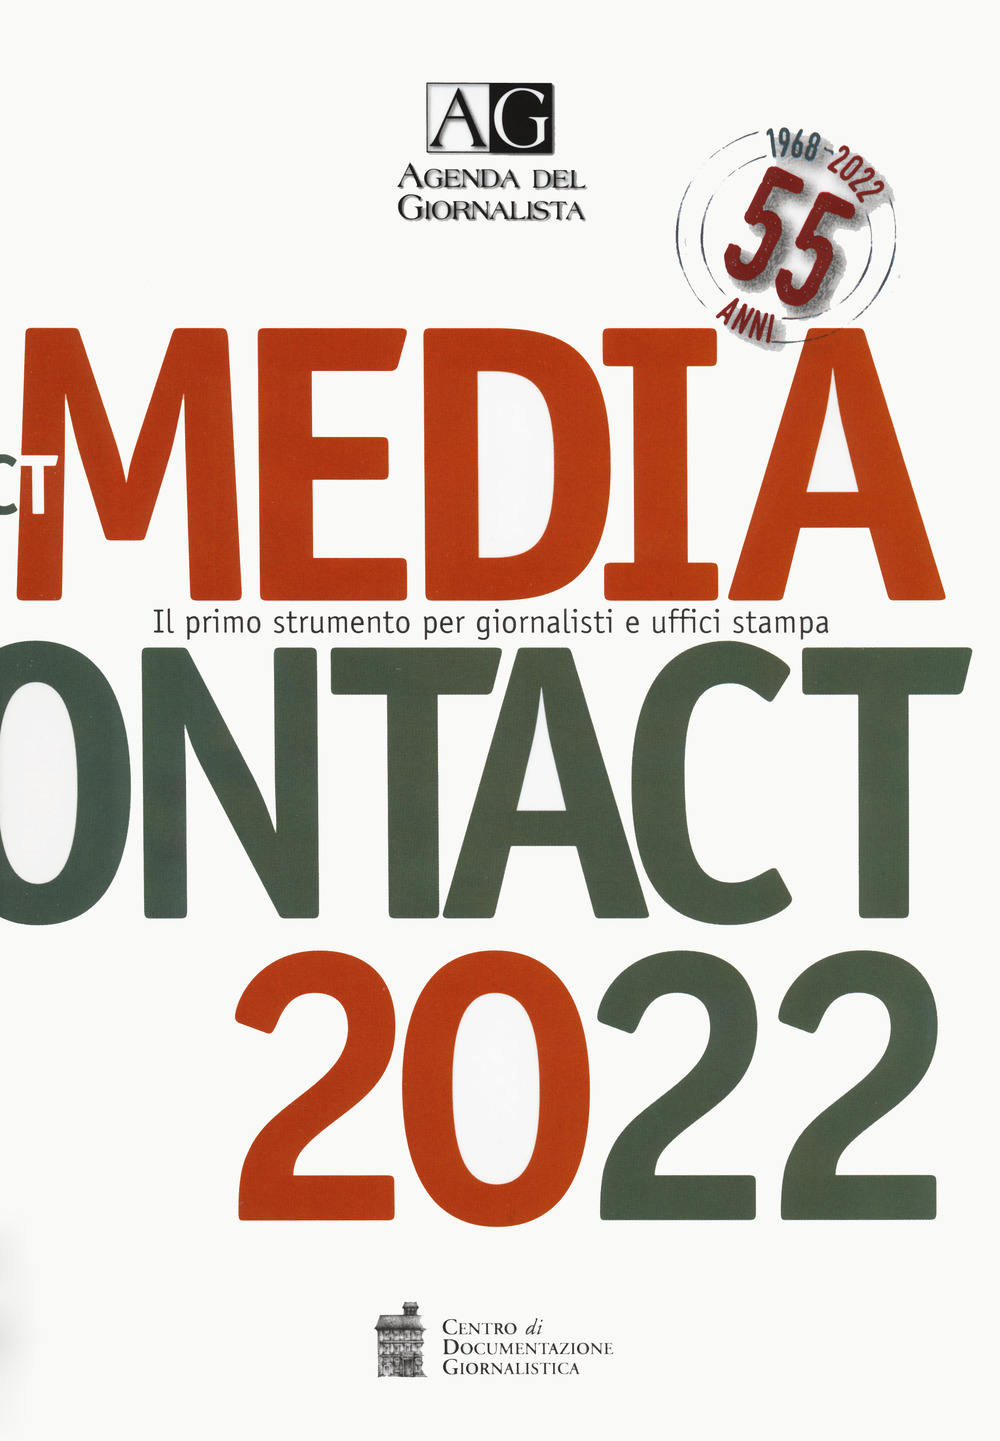 Agenda del giornalista 2022. Media contact